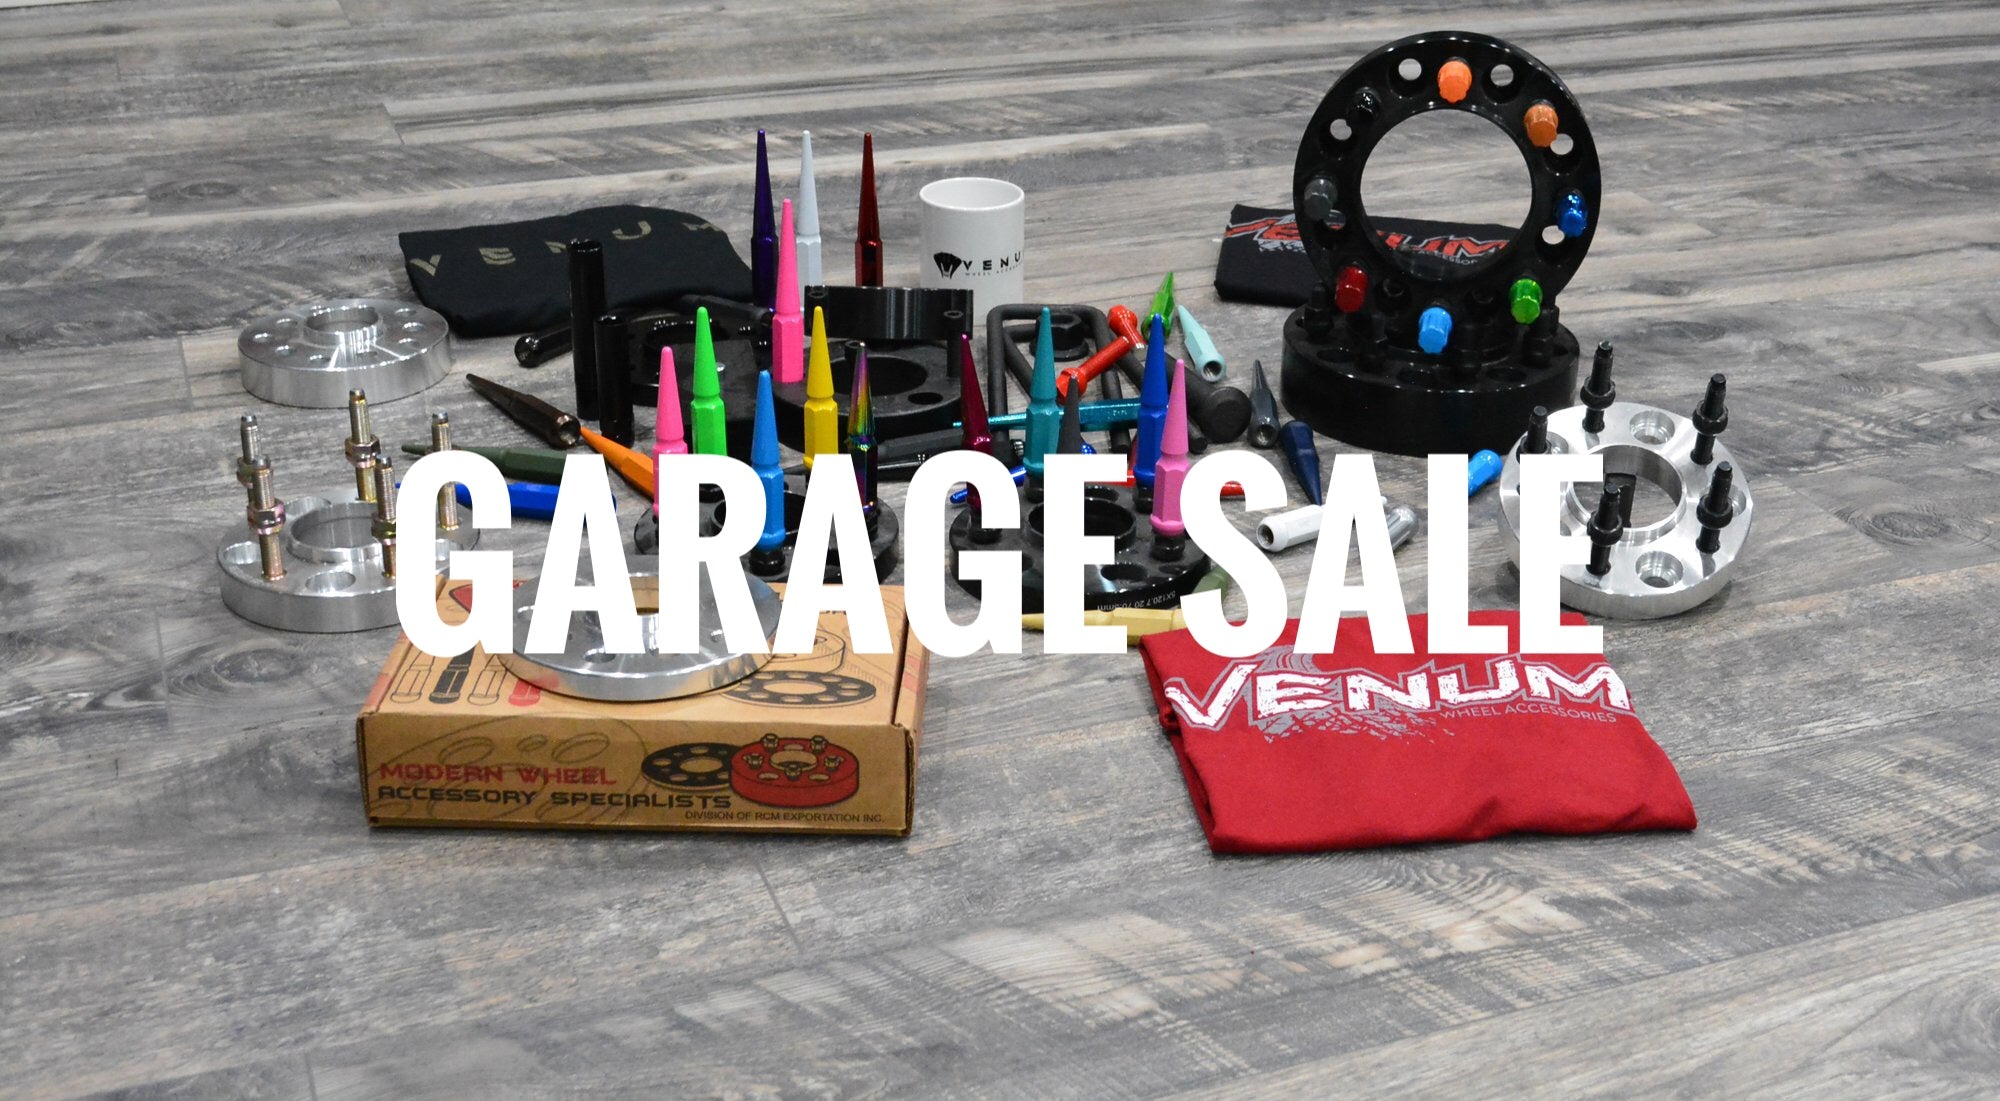 August 18, 2020 Garage Sale Items Instagram Live